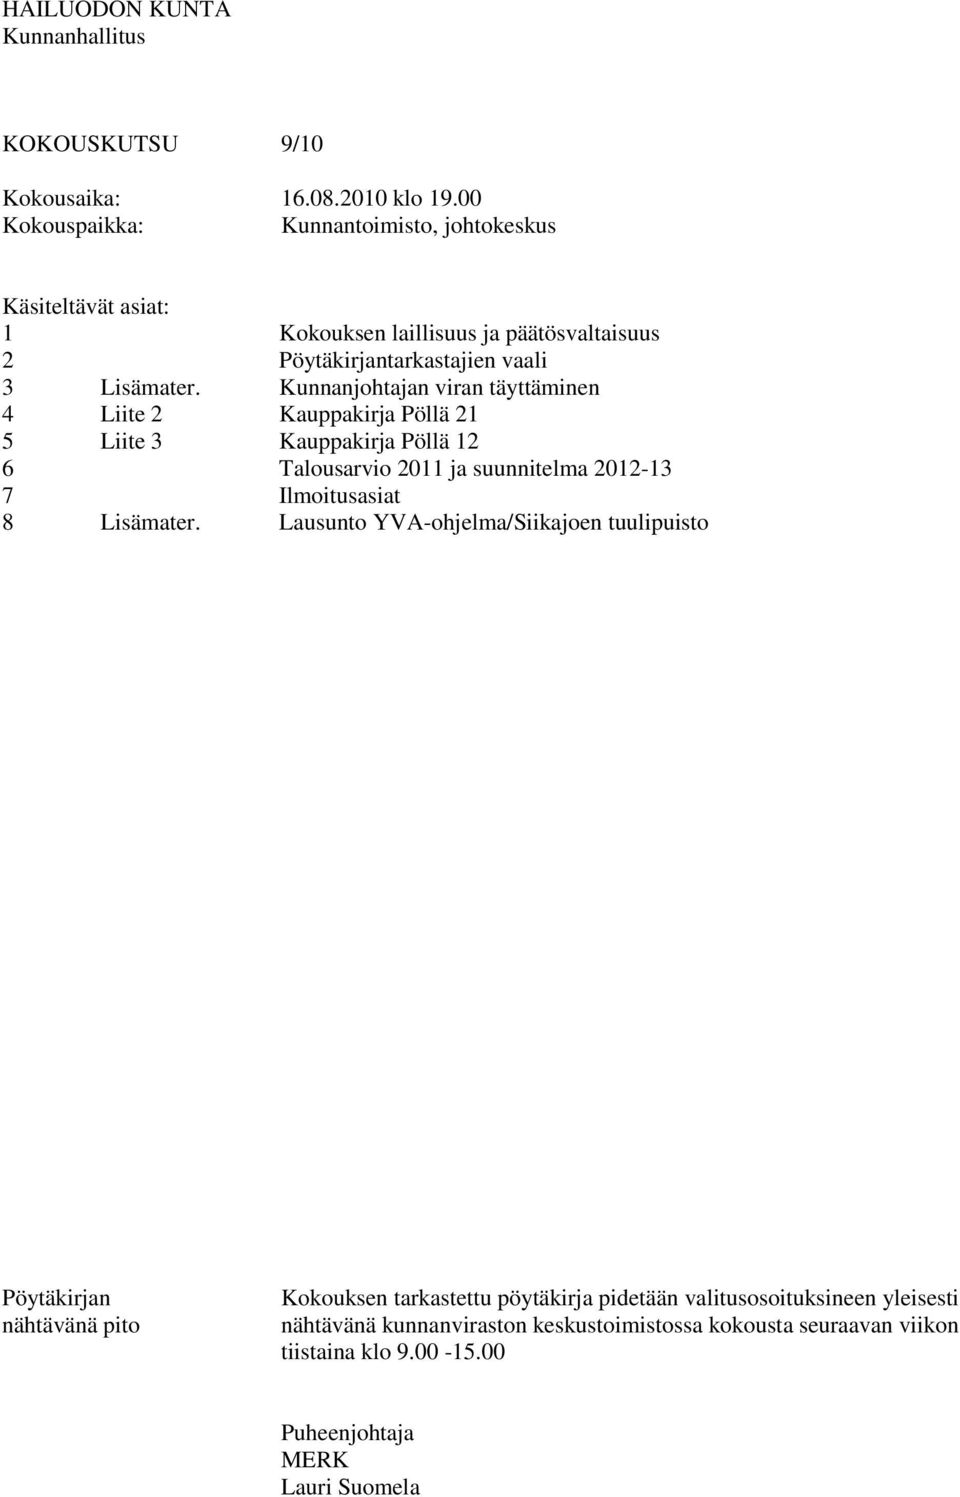 Liite 2 Liite 3 Pöytäkirjantarkastajien vaali Kunnanjohtajan viran täyttäminen Kauppakirja Pöllä 21 Kauppakirja Pöllä 12 Talousarvio 2011 ja suunnitelma 2012-13